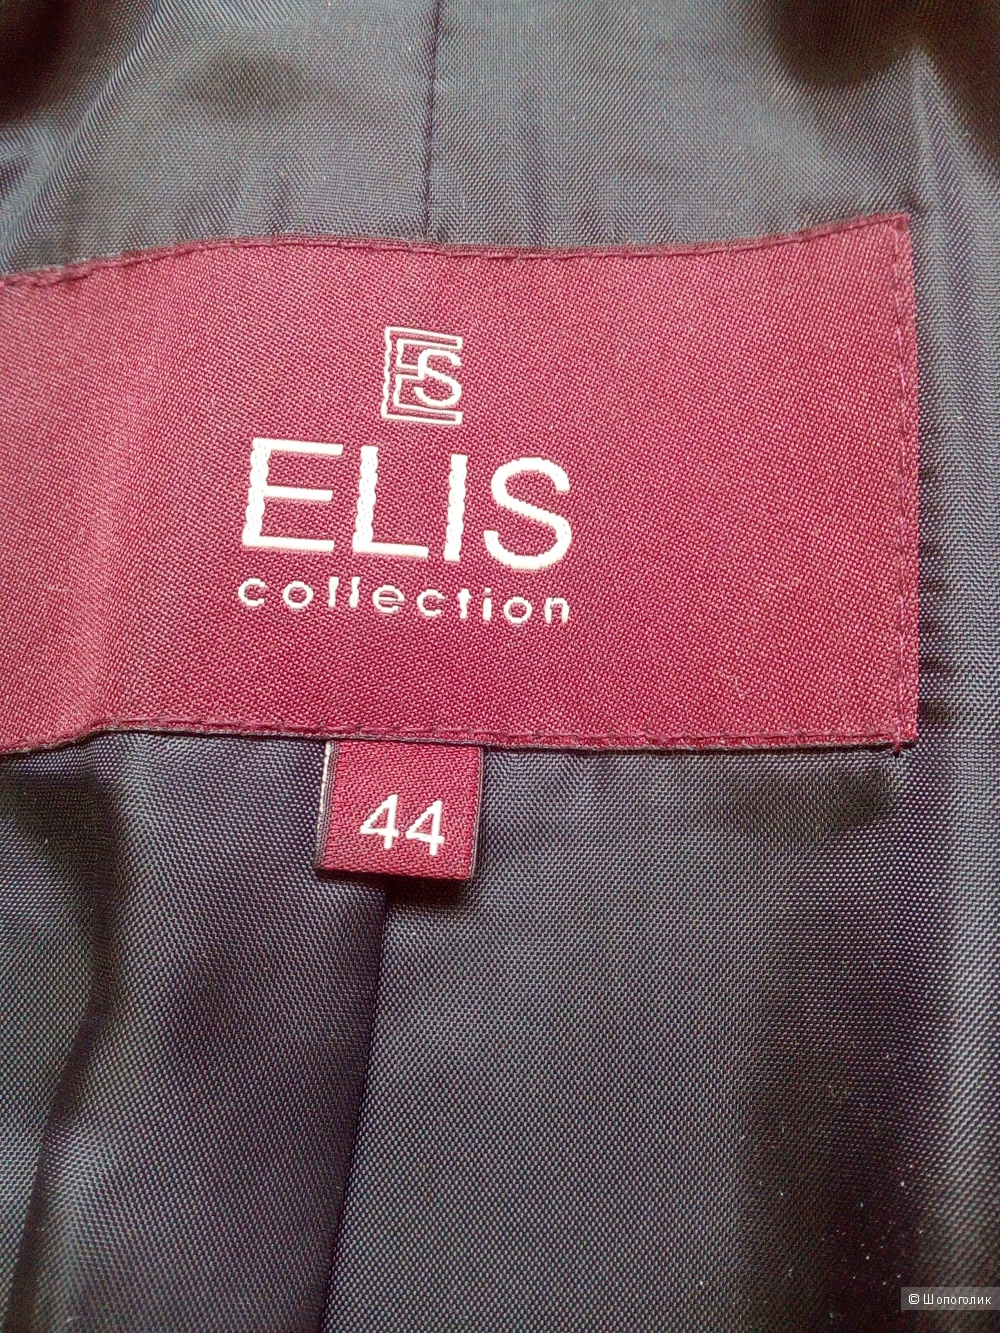 Пальто Elis collection. Черное, 44-46 размеры